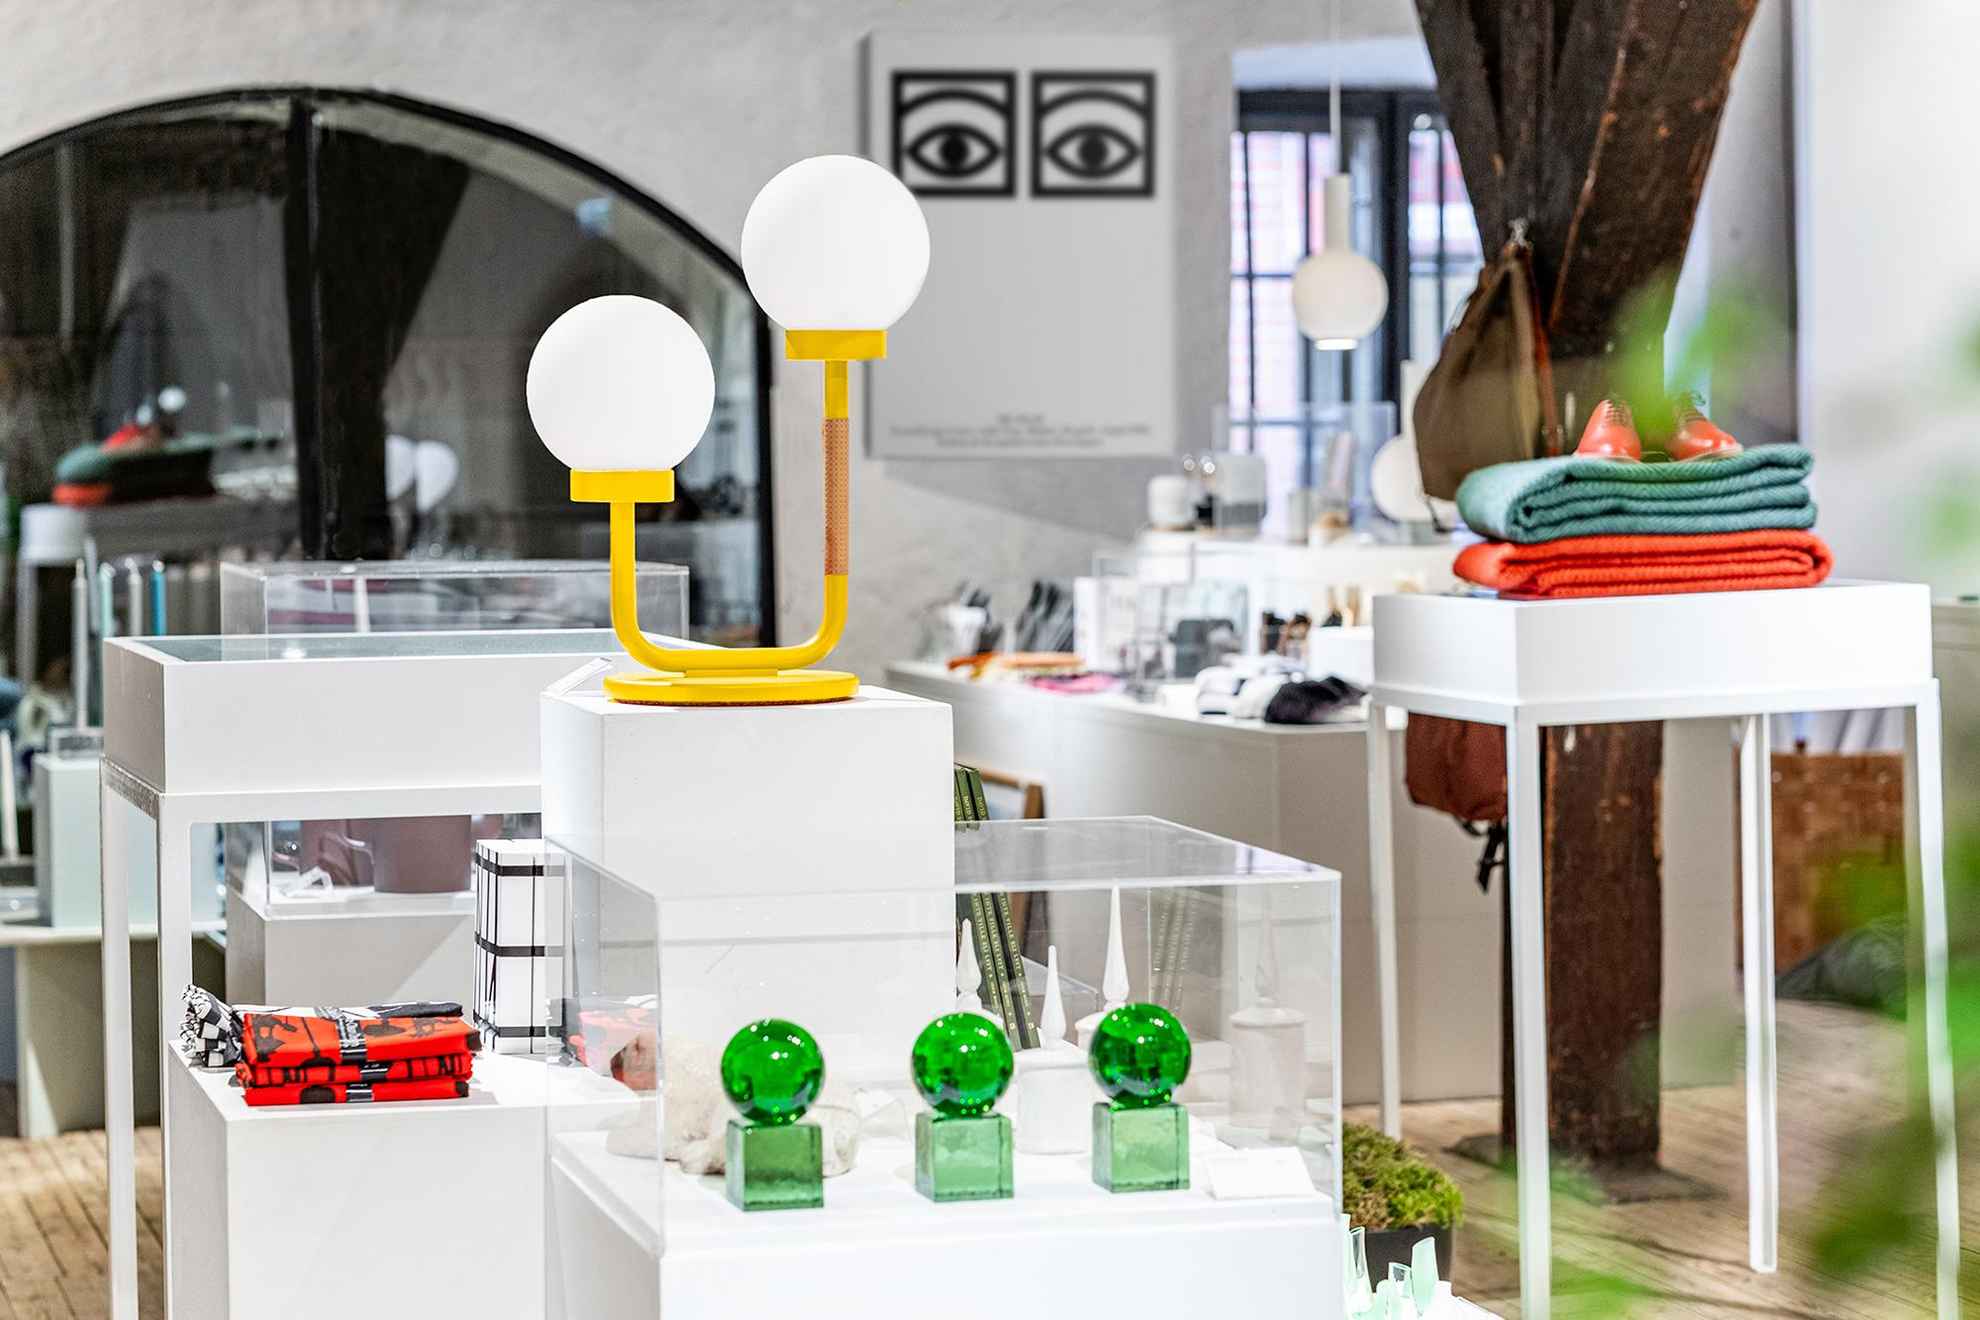 Der Shop des Form/Design Centers. Viele Designobjekte wie Lampen, Glaskunst und andere Gegenstände werden ausgestellt.